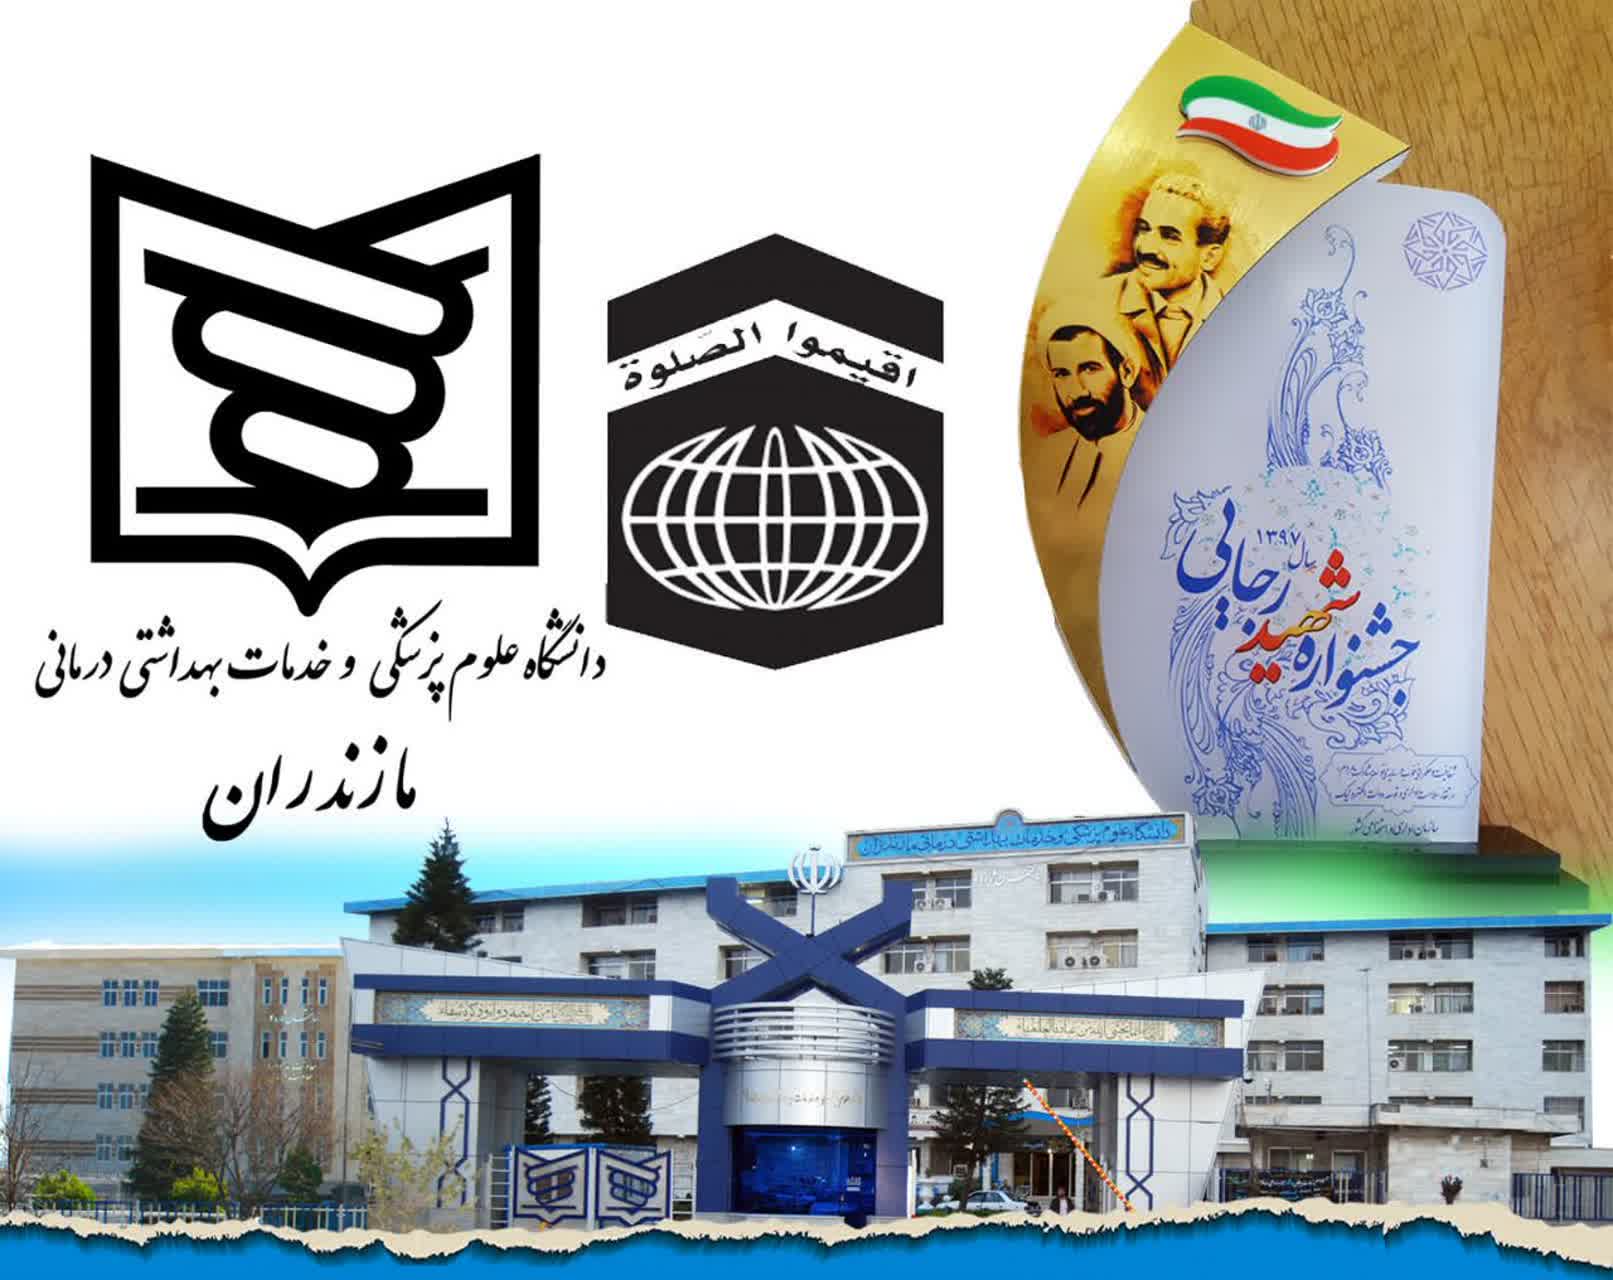 کسب رتبه برتر دانشگاه علوم پزشکی مازندران در نشر و ترویج فرهنگ نماز